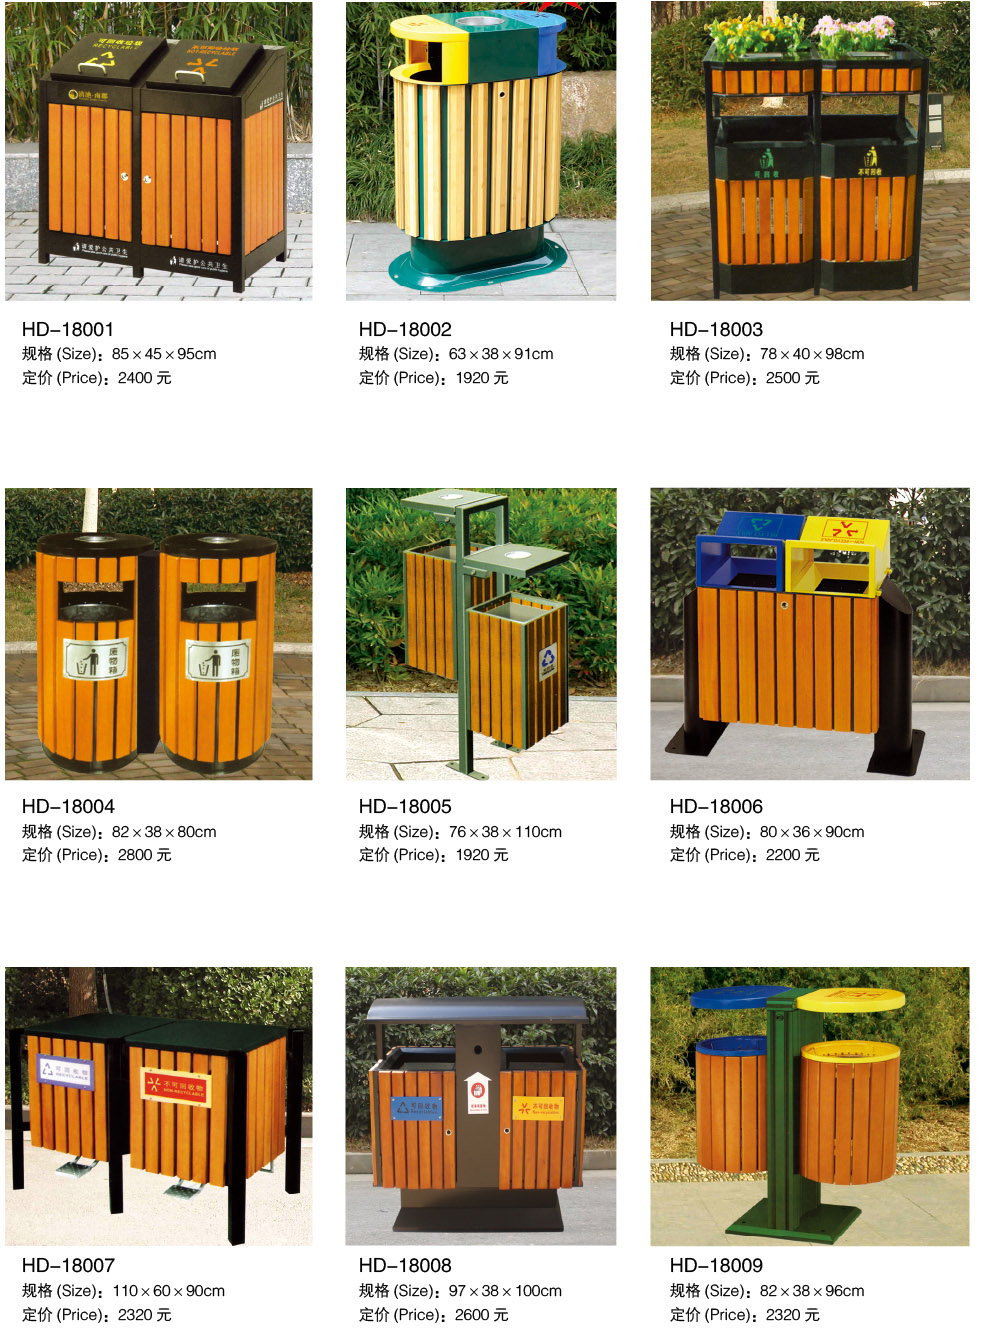 公共环境保护排序了垃圾箱或木头垃圾箱（HD-18001）